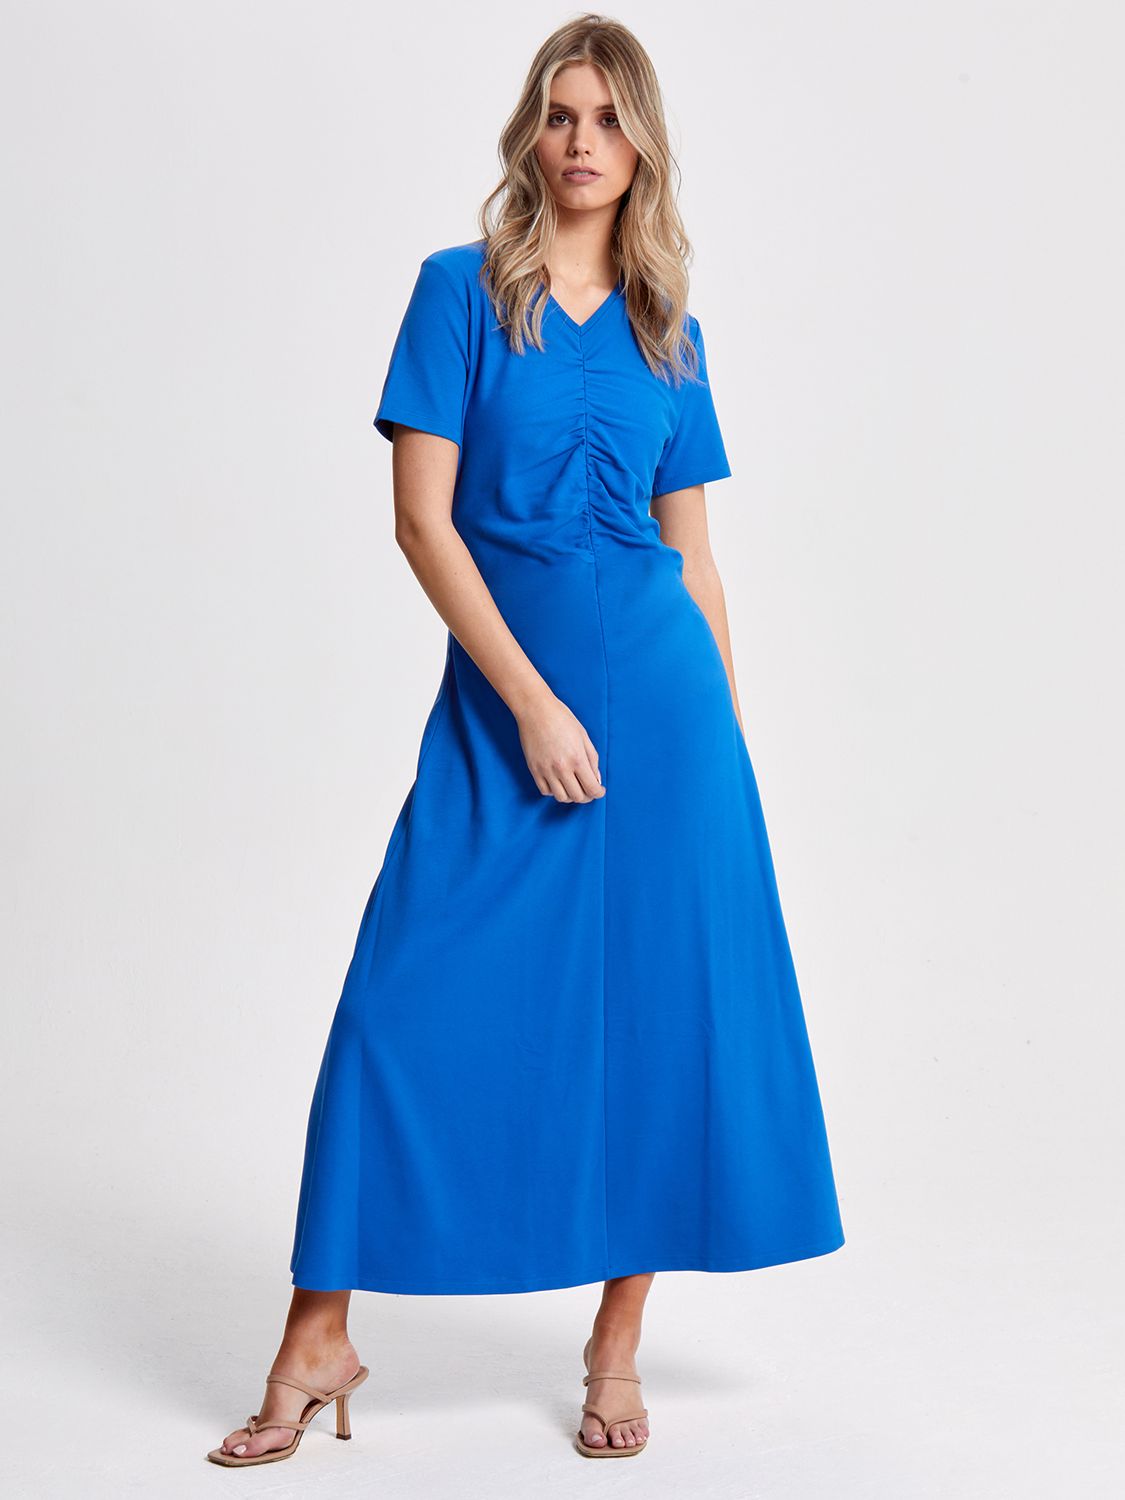 Helen McAlinden Finnley Ruched Jersey Dress, Cobalt Blue, S